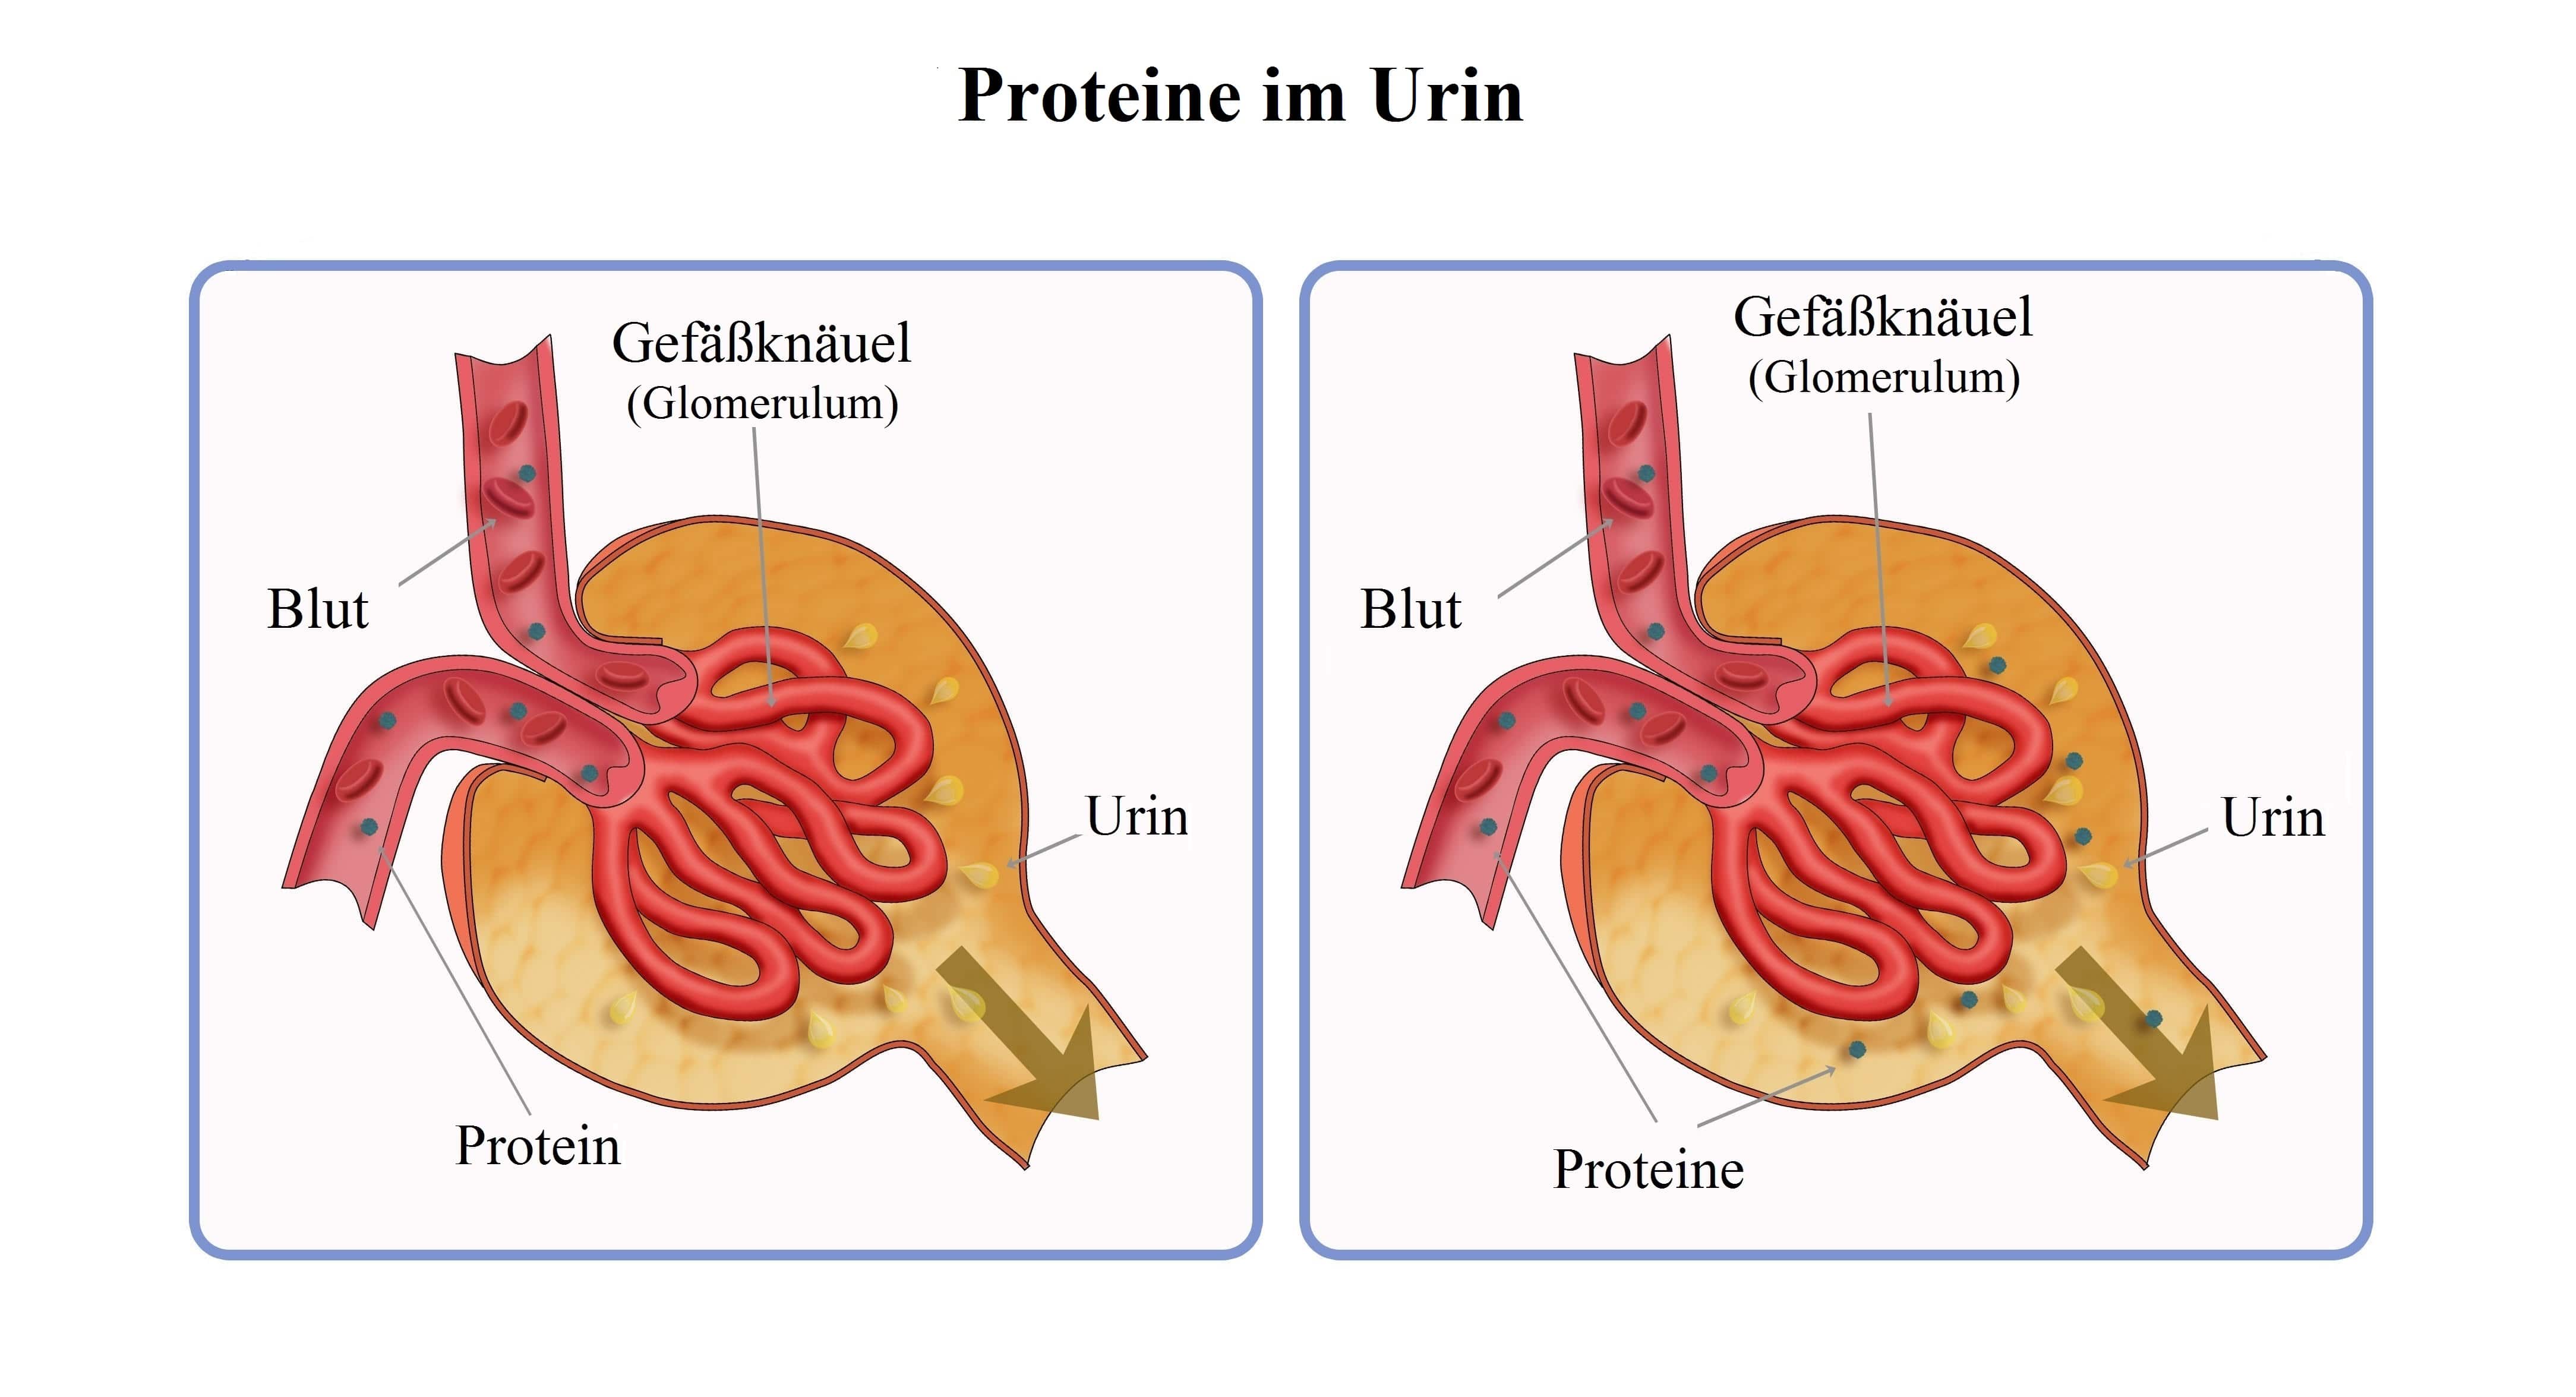 Proteine im Urin